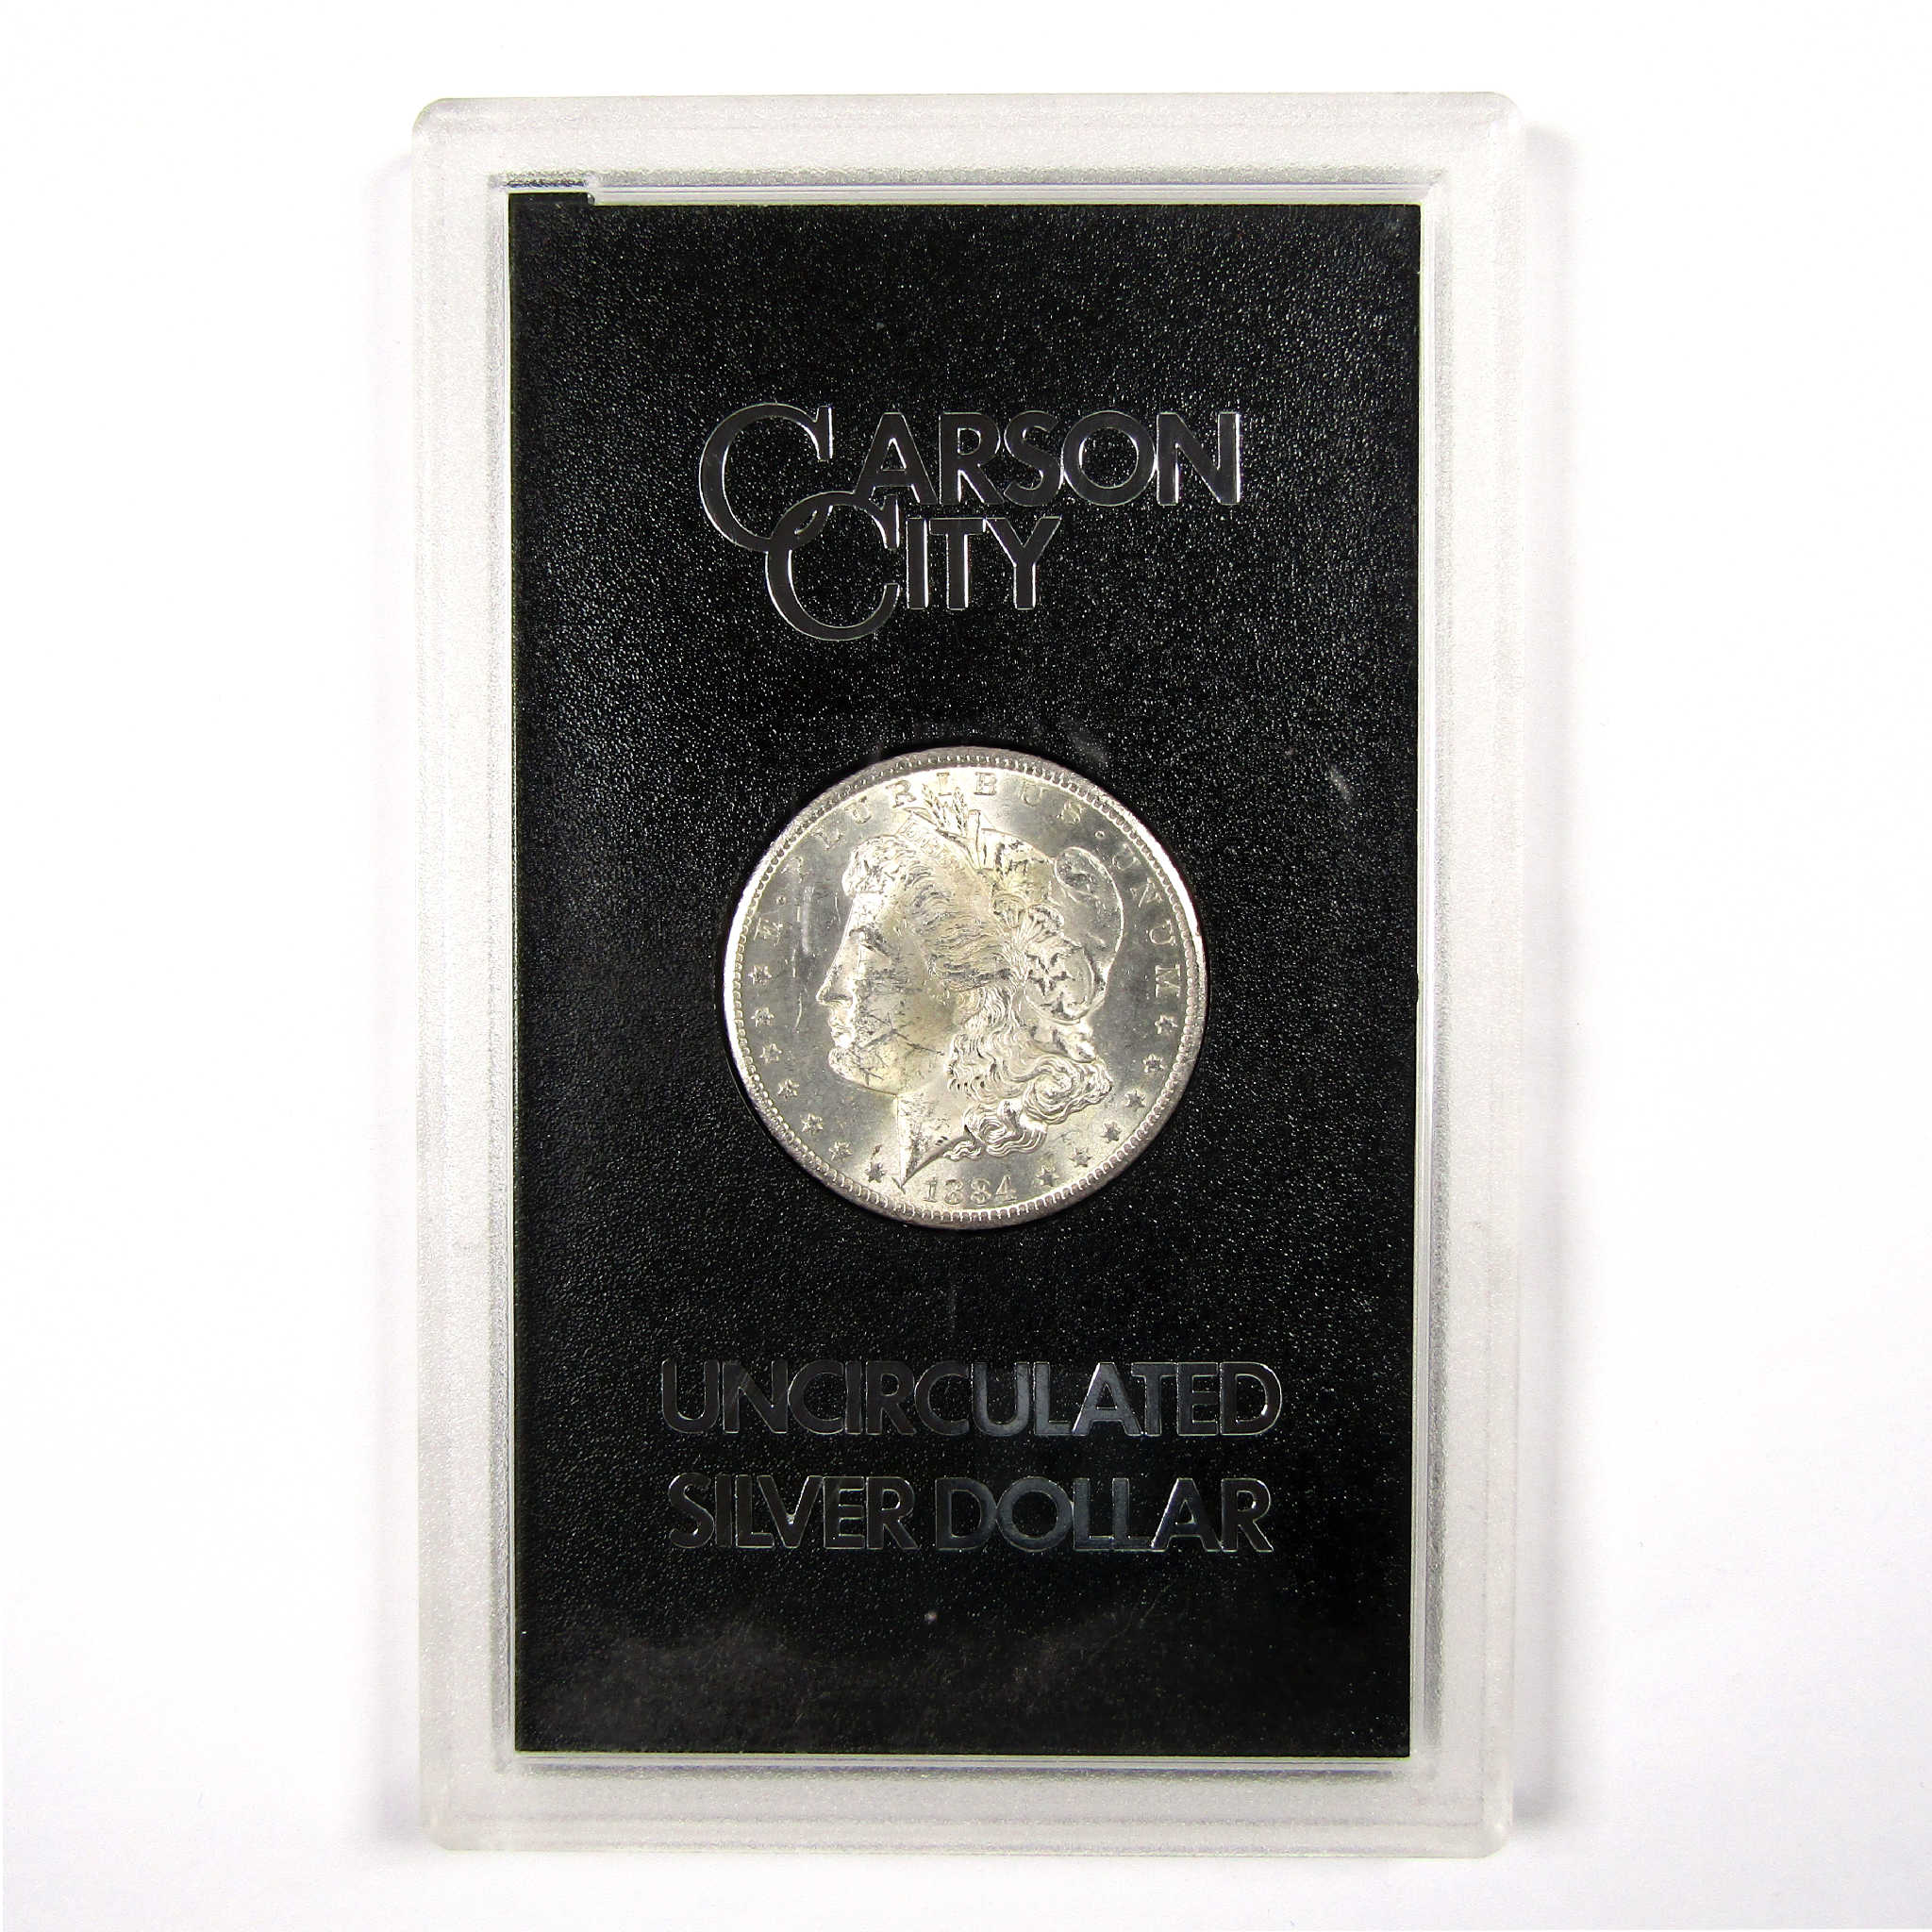 1884 CC GSA Morgan Dollar BU Uncirculated Silver $1 Coin SKU:I11496 - Morgan coin - Morgan silver dollar - Morgan silver dollar for sale - Profile Coins &amp; Collectibles